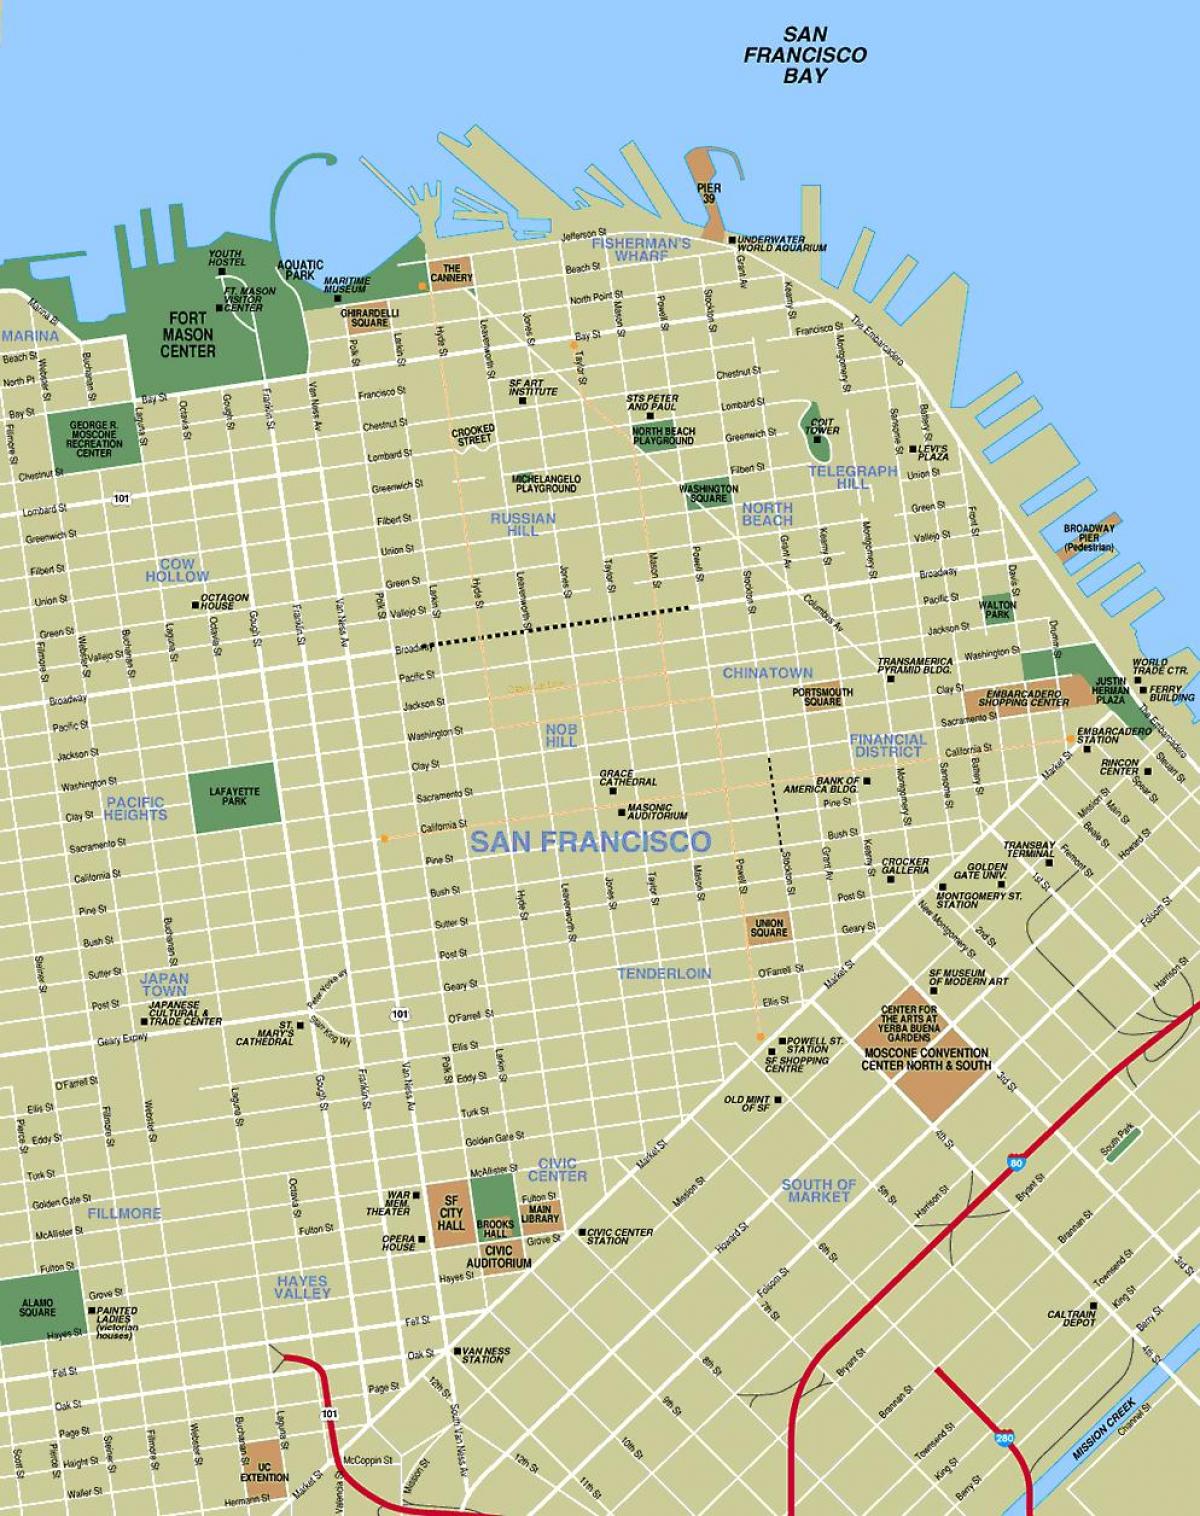 SFO картата на града